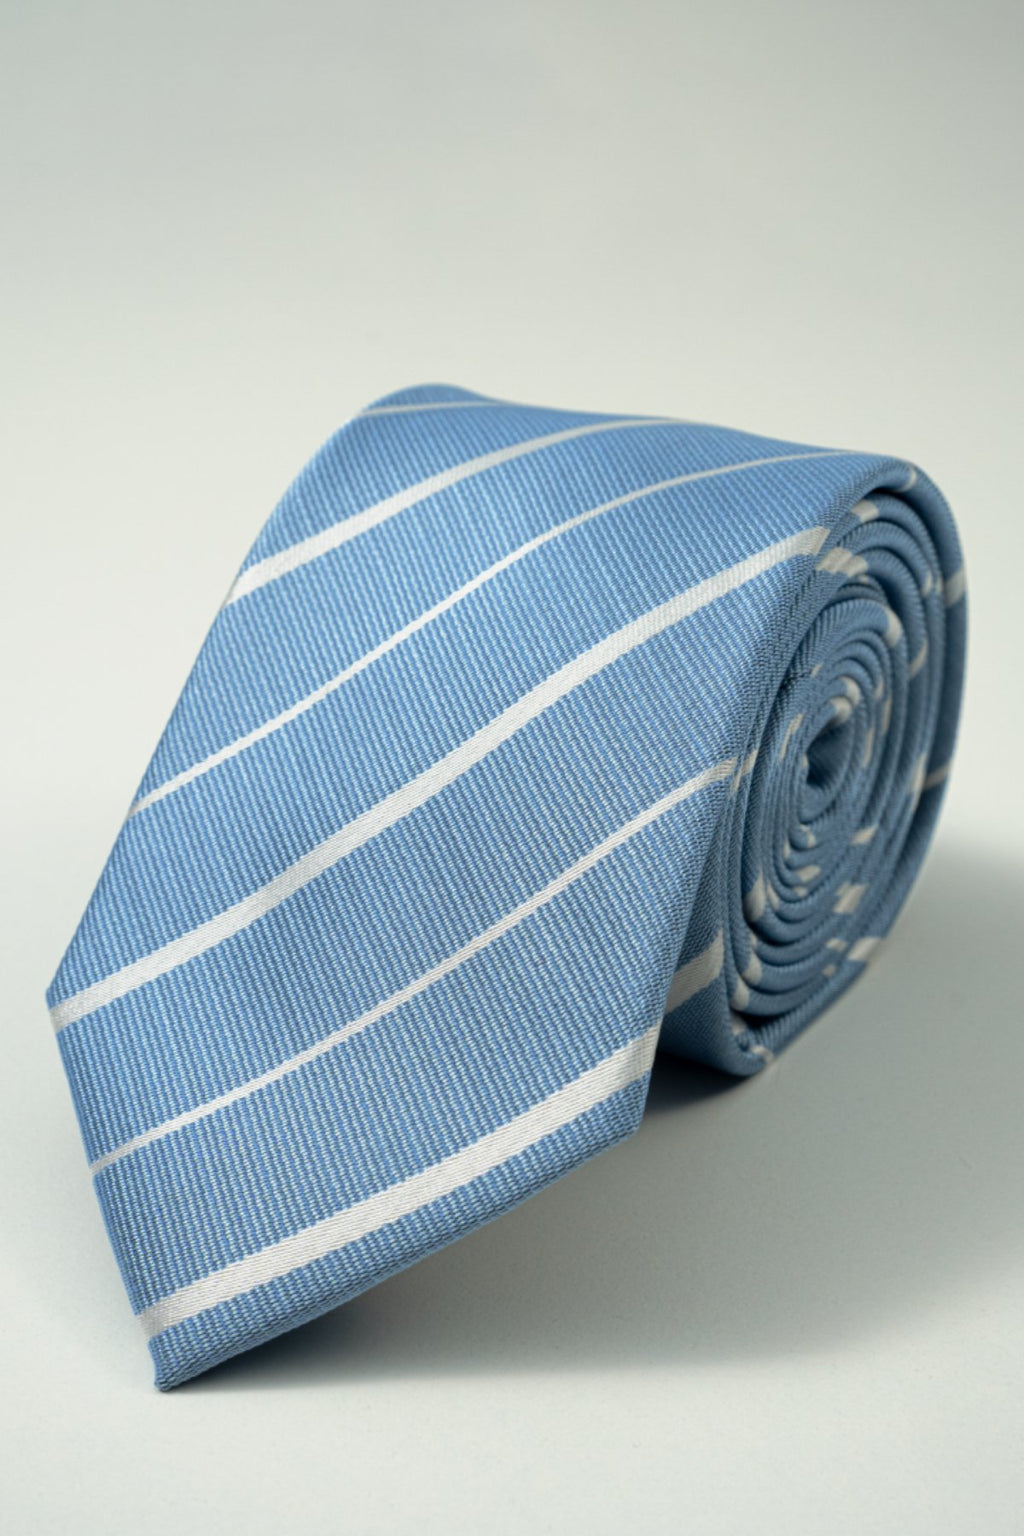 Kaklaraiščiai - paketas (3 vnt.)